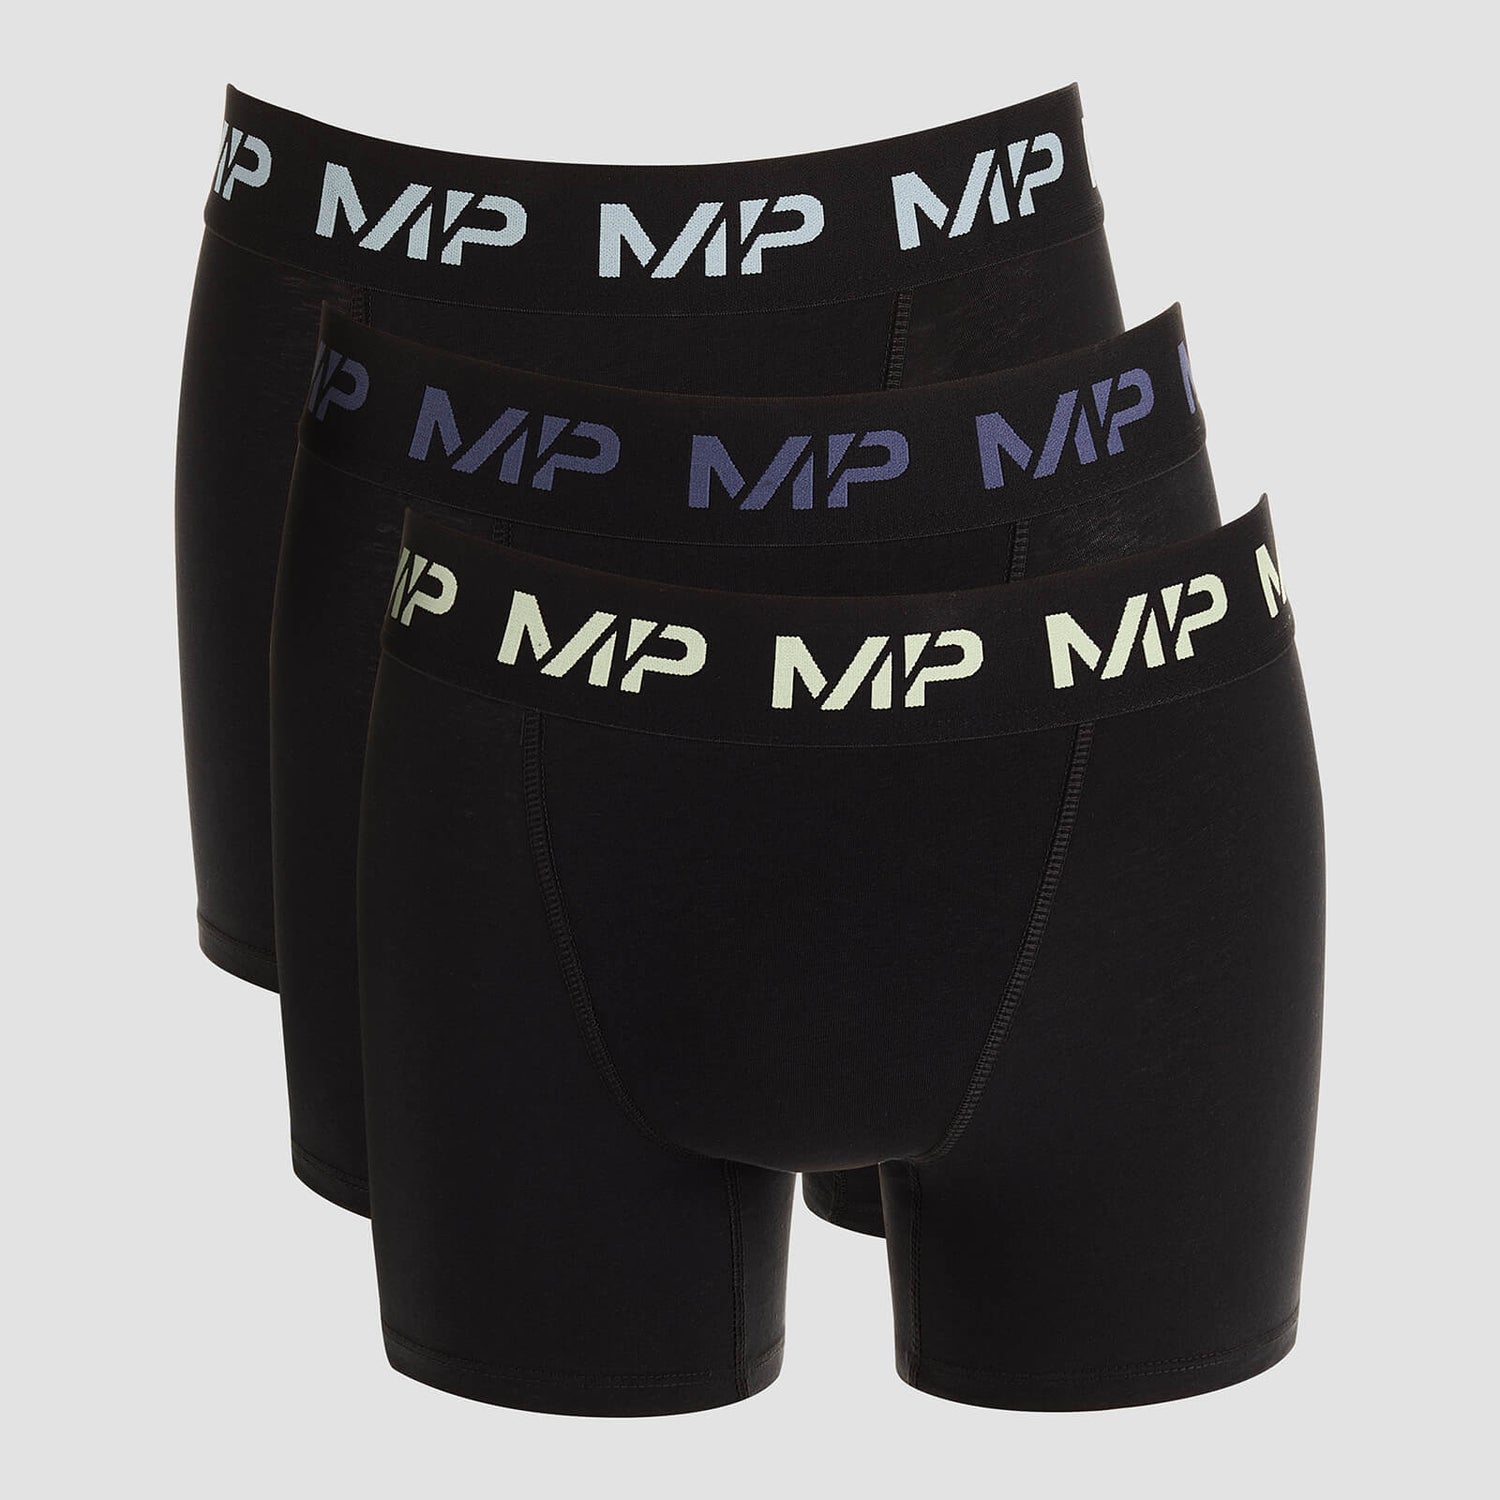 Bóxeres con logotipos de color para hombre de MP (paquete de 3) - Negro/Verde escarcha/Azul acero/Azul hielo - XS